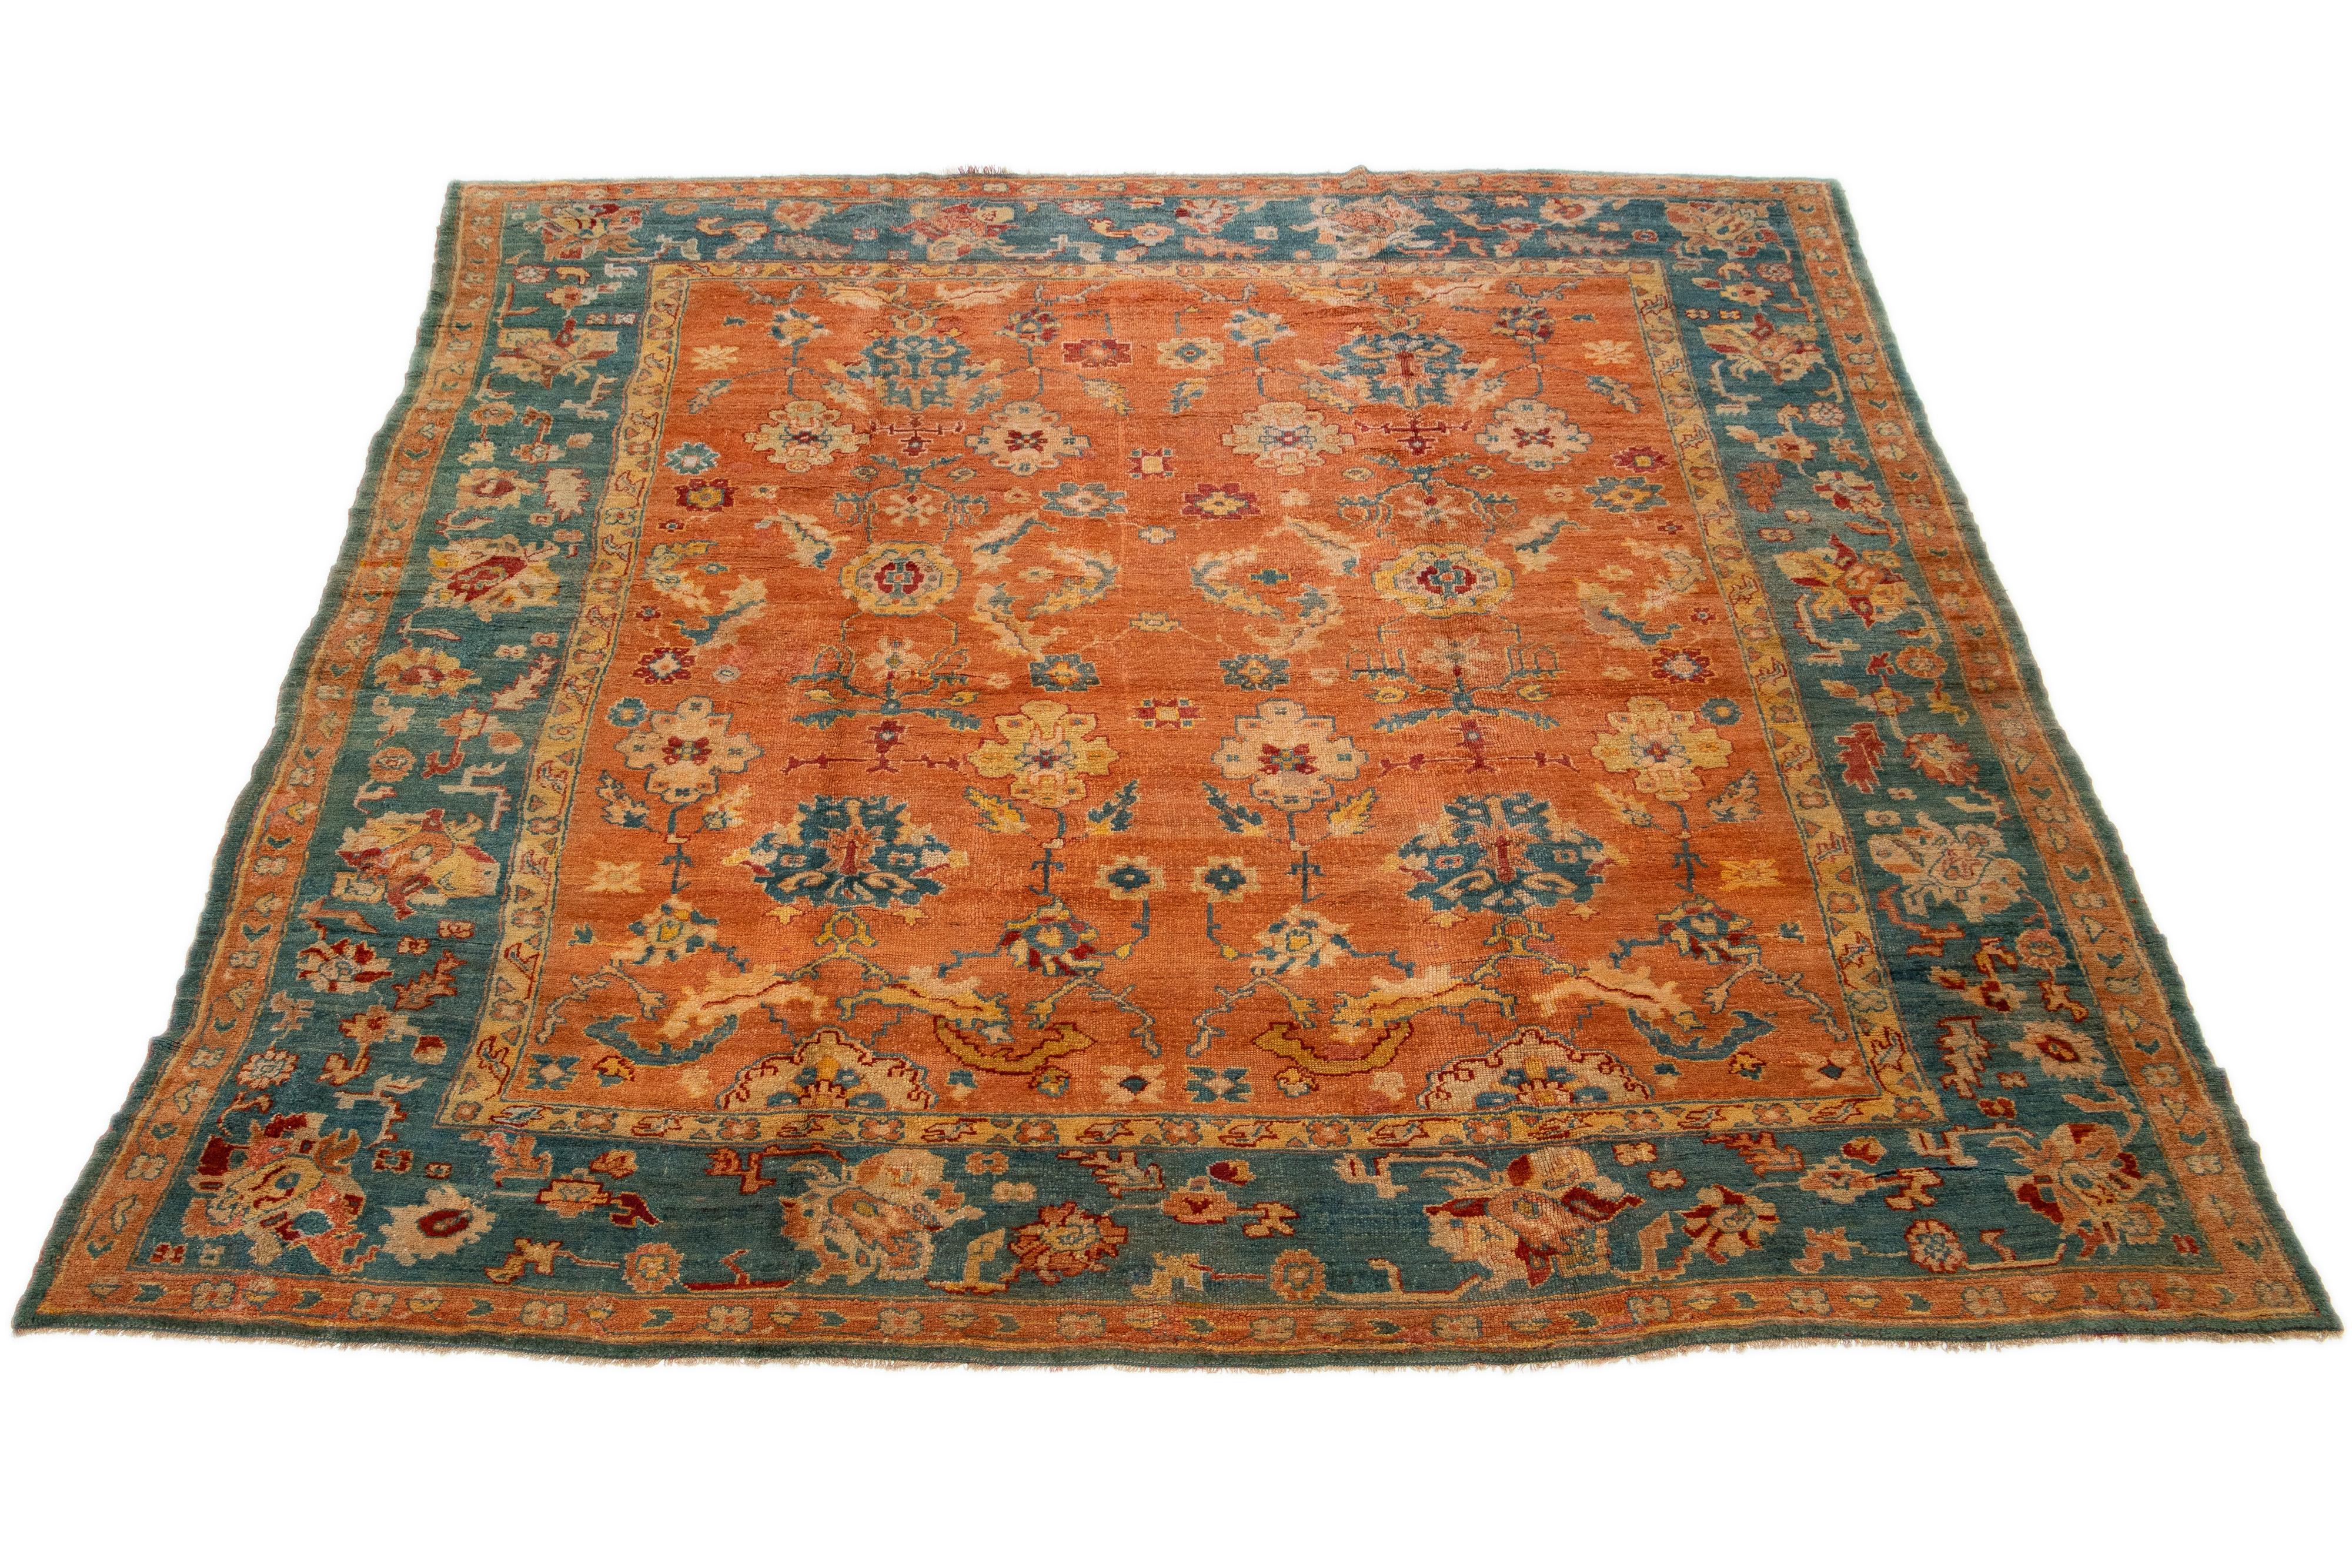 Dieser türkische Oushak-Teppich ist wirklich einmalig. Es wurde fachmännisch aus hochwertiger Wolle handgeknüpft und besticht durch ein wunderschönes orangefarbenes Feld. Der Teppich ist mit einer kräftigen blauen Bordüre umrahmt und mit einem